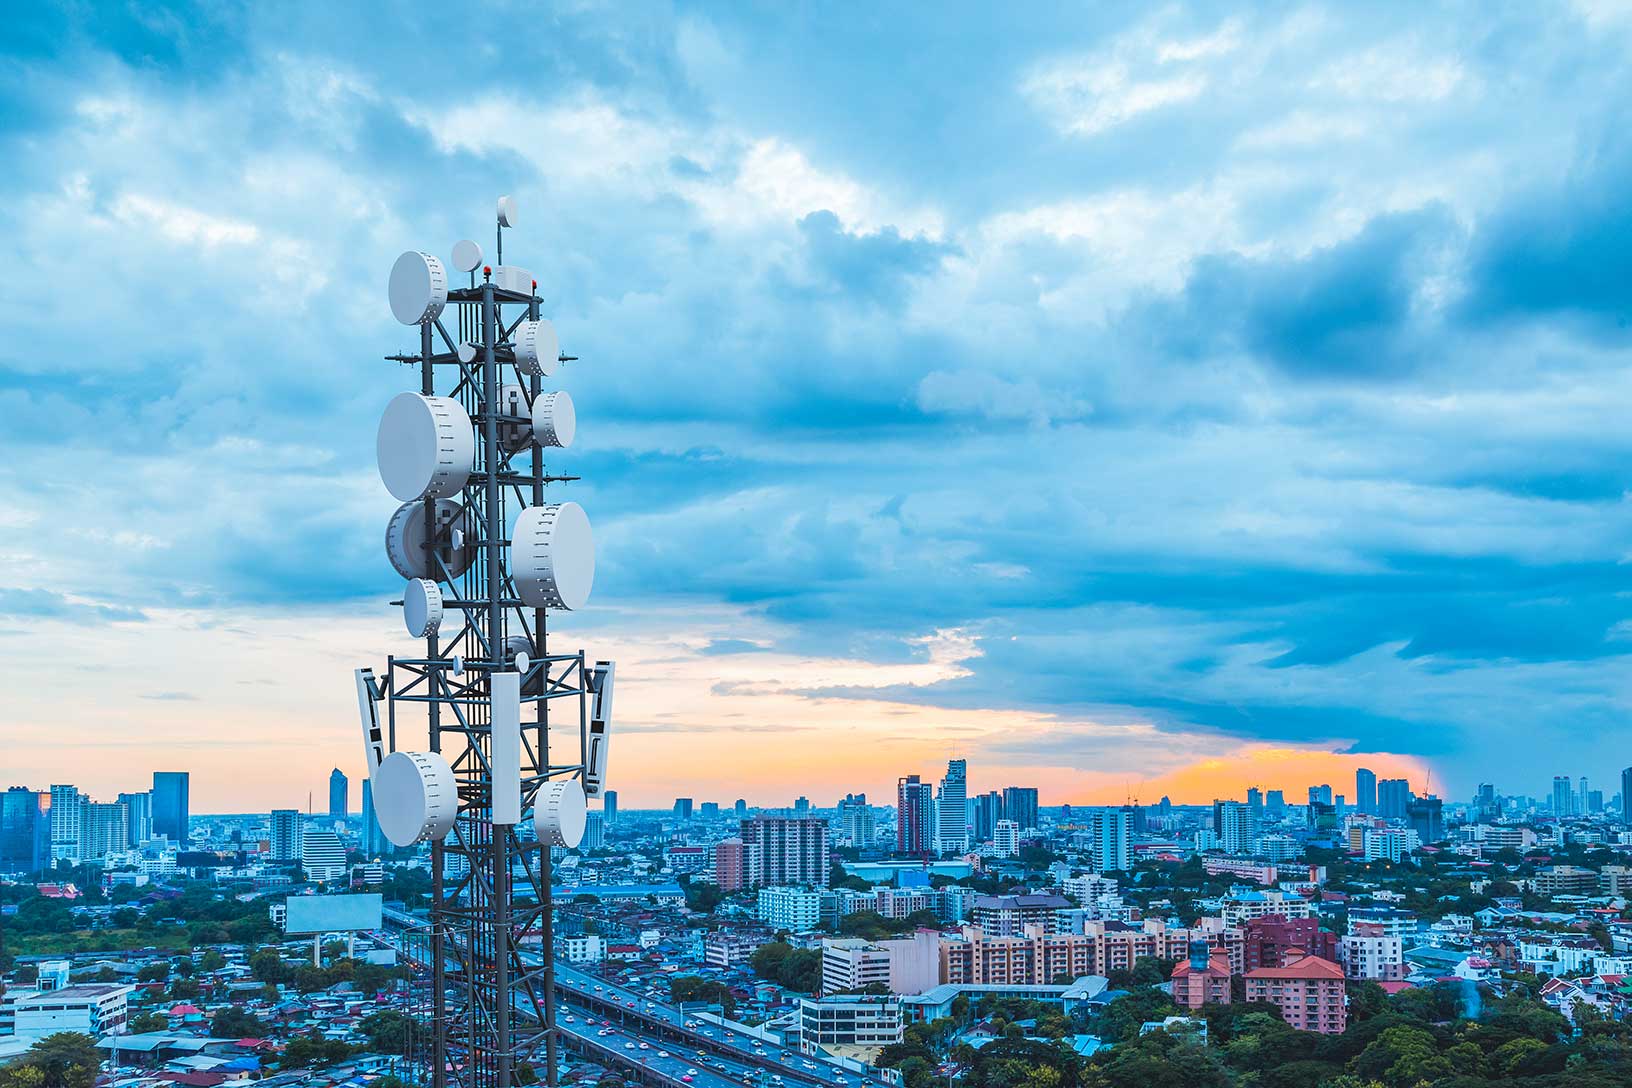 Torre de telecomunicações com antena de rede celular 5G